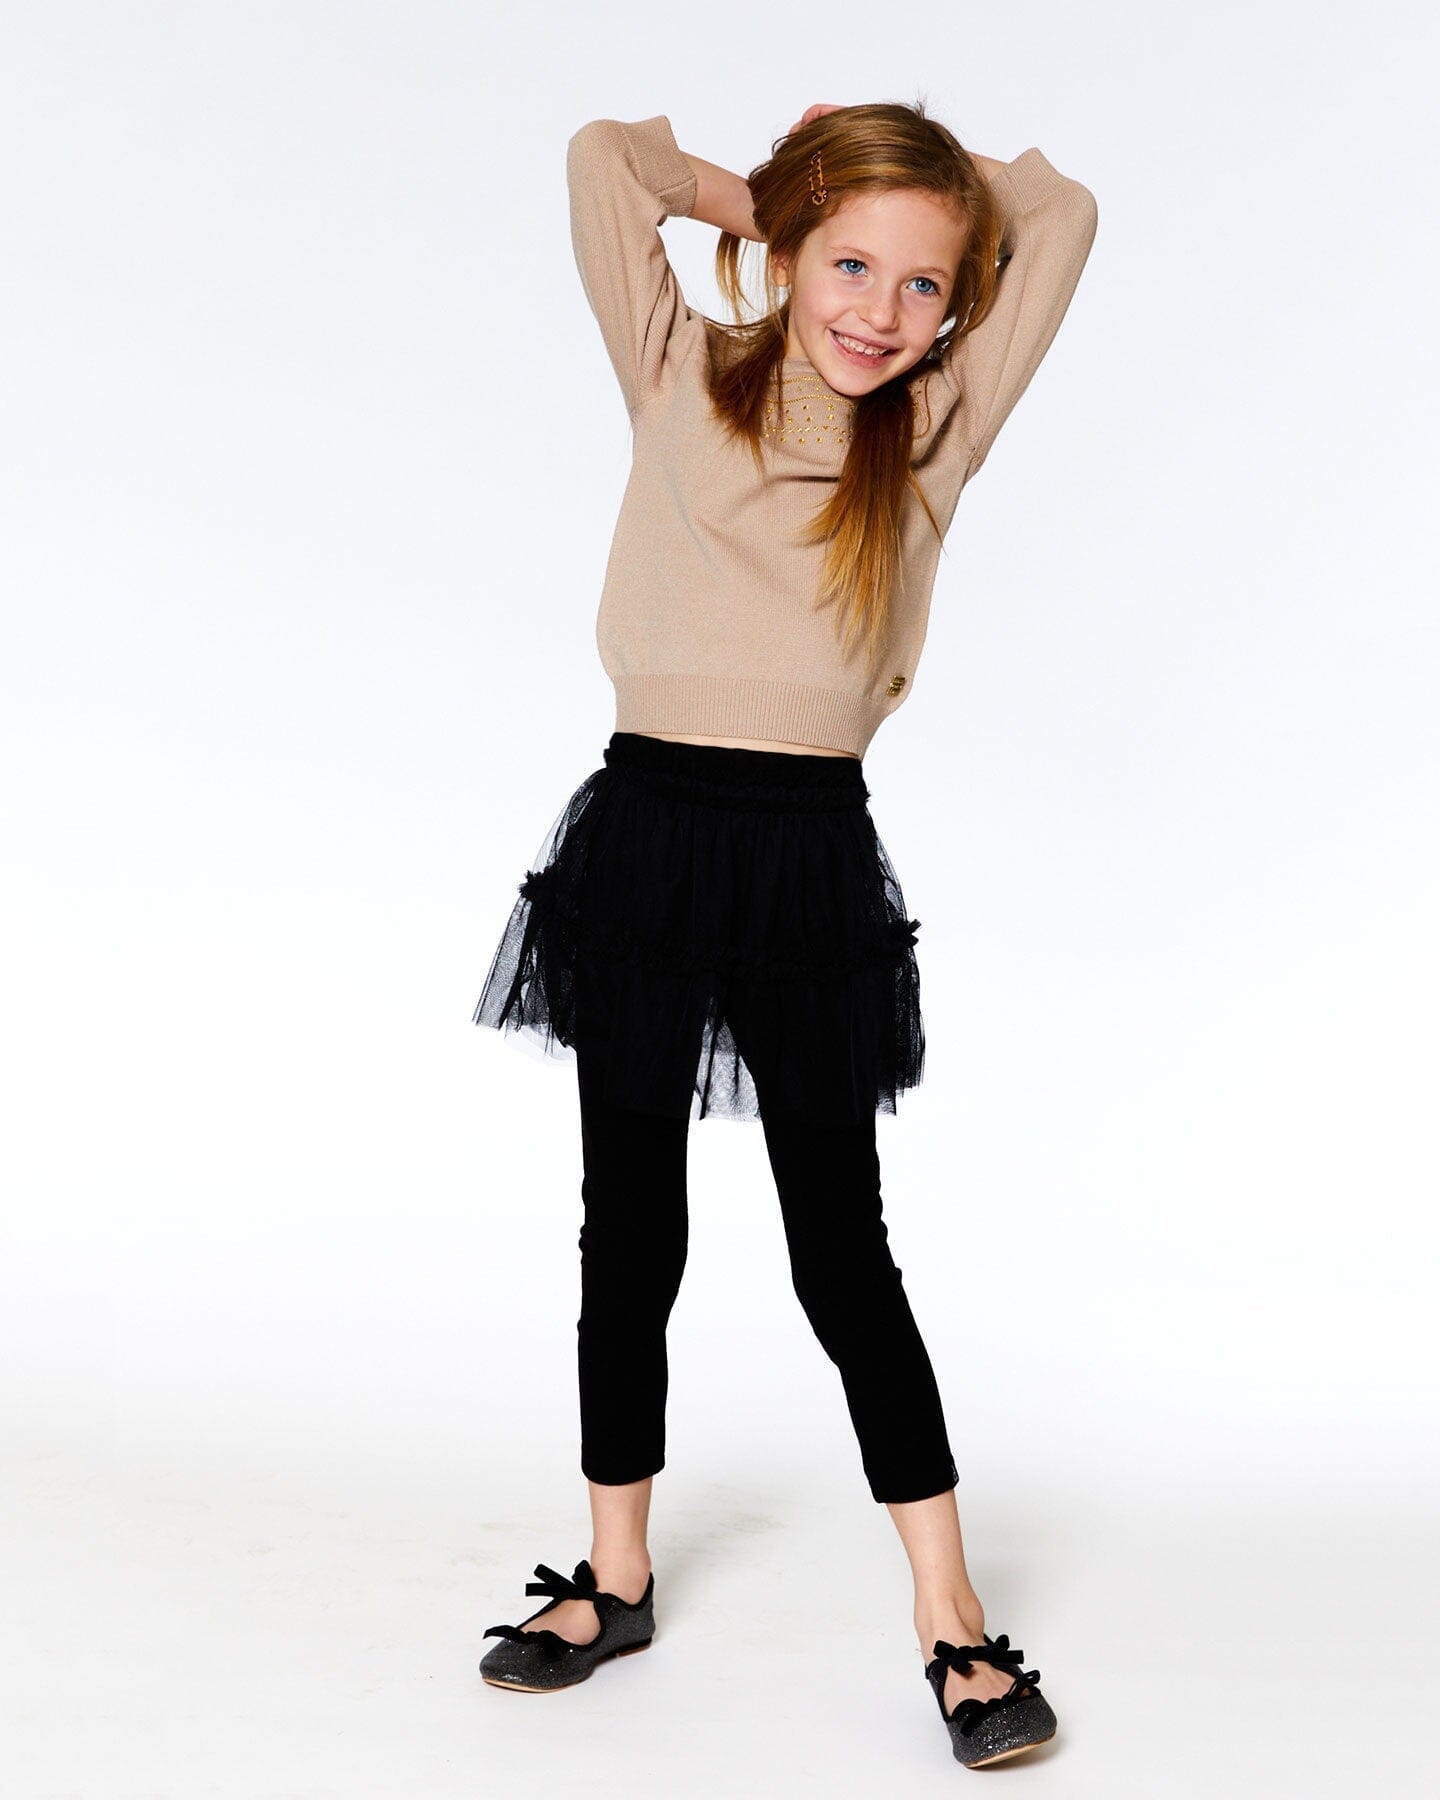 Super Soft Leggings With Tulle Skirt Black - F20YG81_999